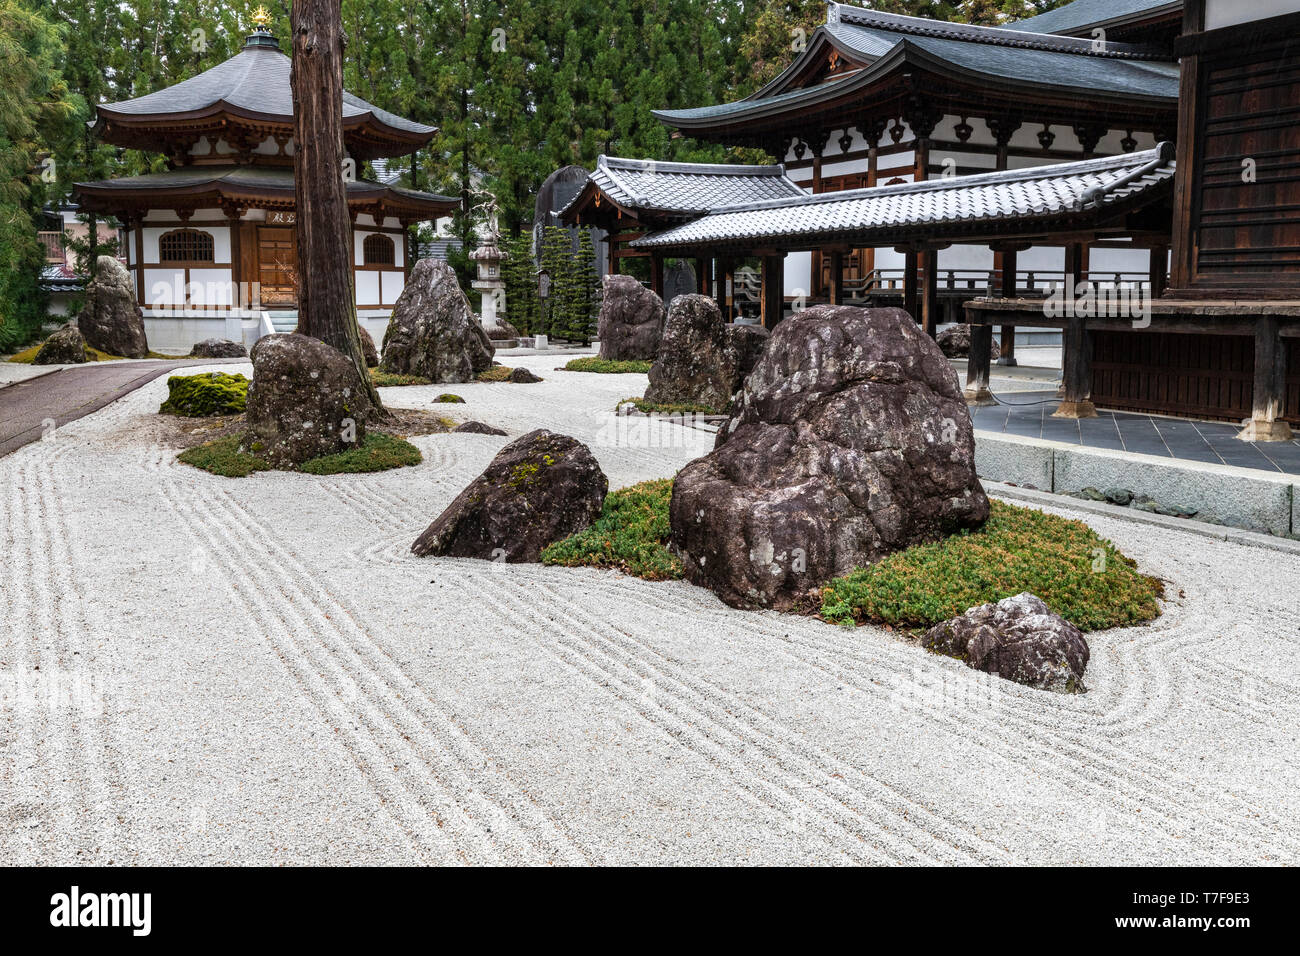 Jiunji Tempel Zen Garten - Jiunji Tempel ist mit einer Vielzahl von Wachstum gesegnet: Kiefer, kirschblüten sowie eine trockene Rock Garden und Moos, die highli Stockfoto